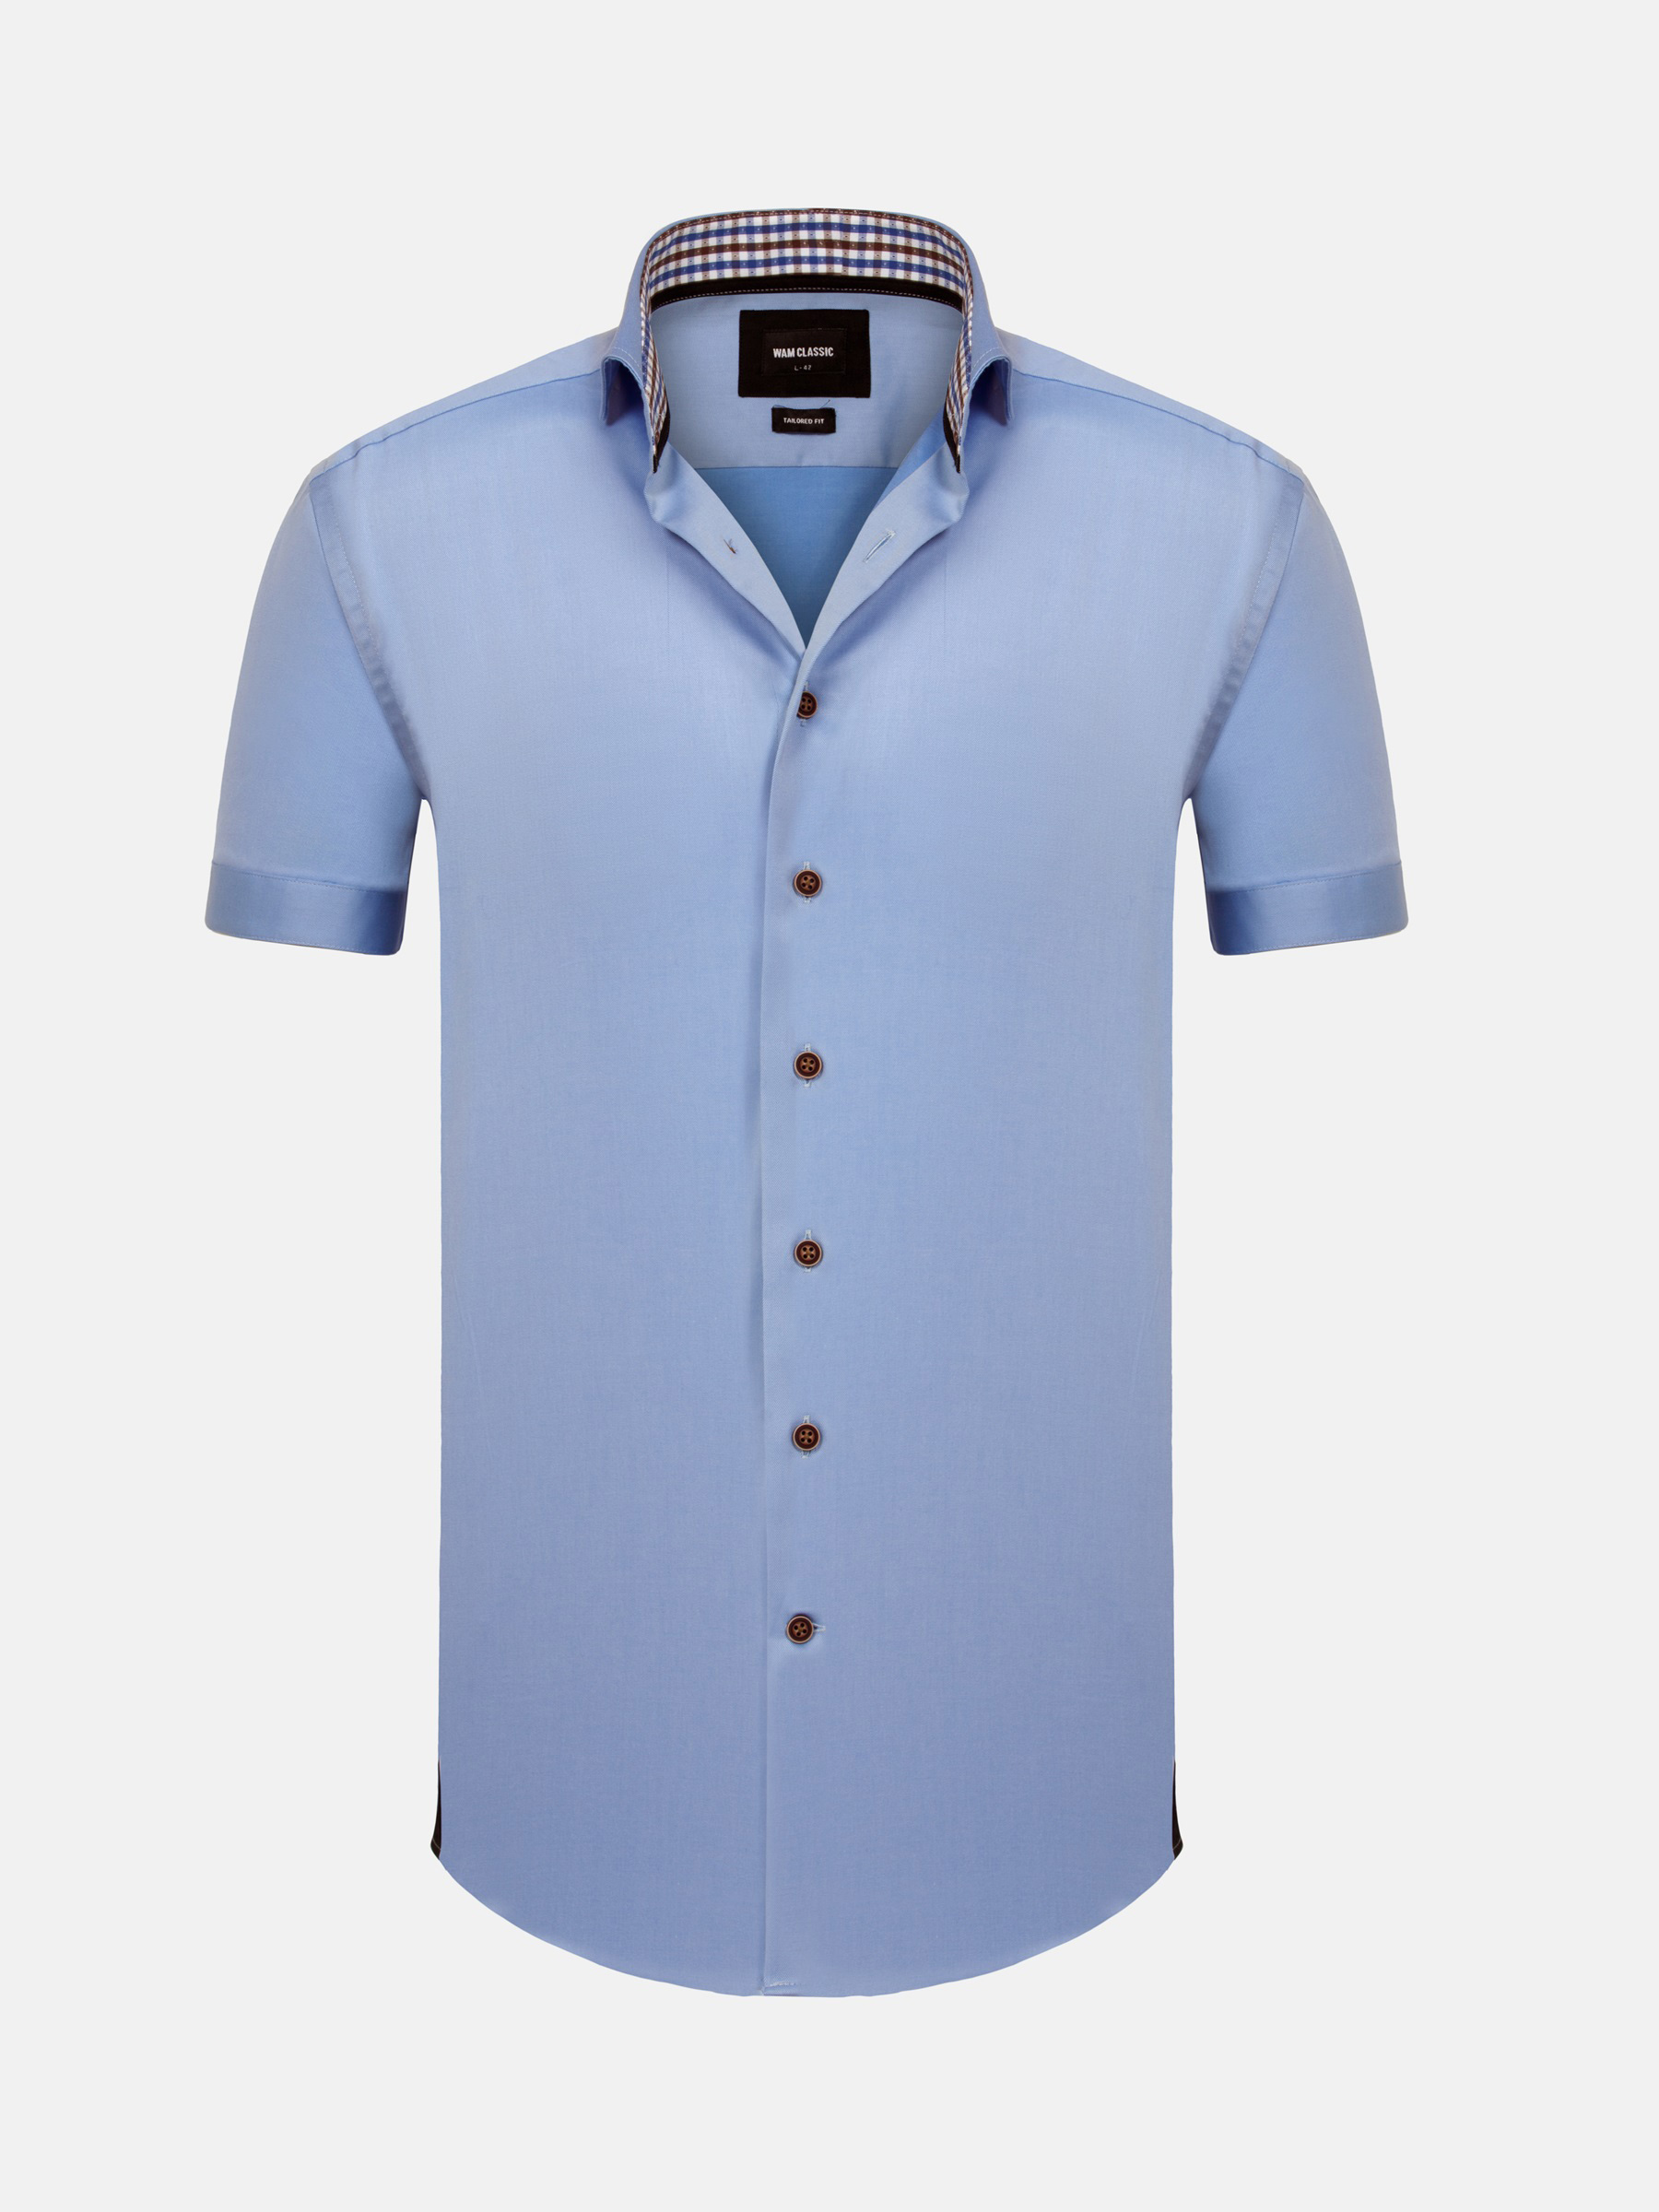 WAM Denim Owen Tailored Fit Blue Overhemd Korte Mouw-